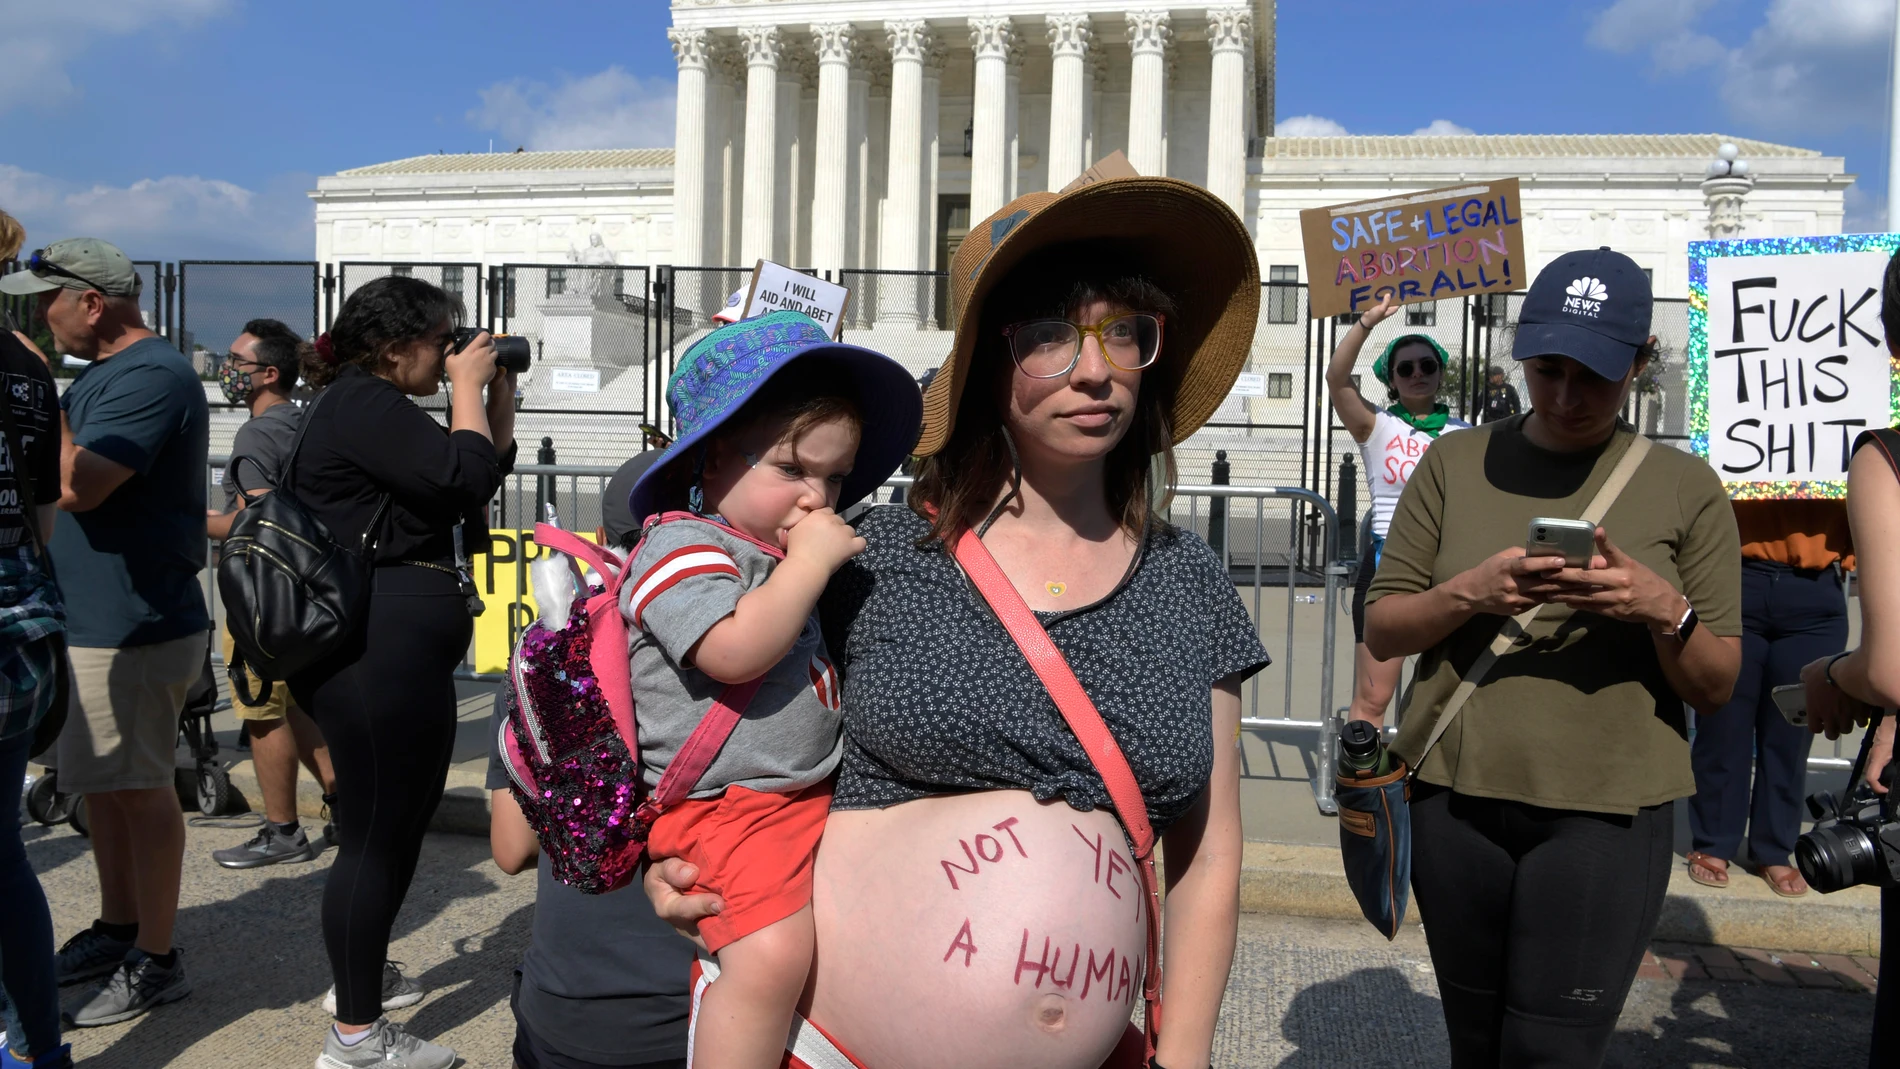 Una mujer embarazada lleva escrito en su vientre "Todavía no es un humanos"